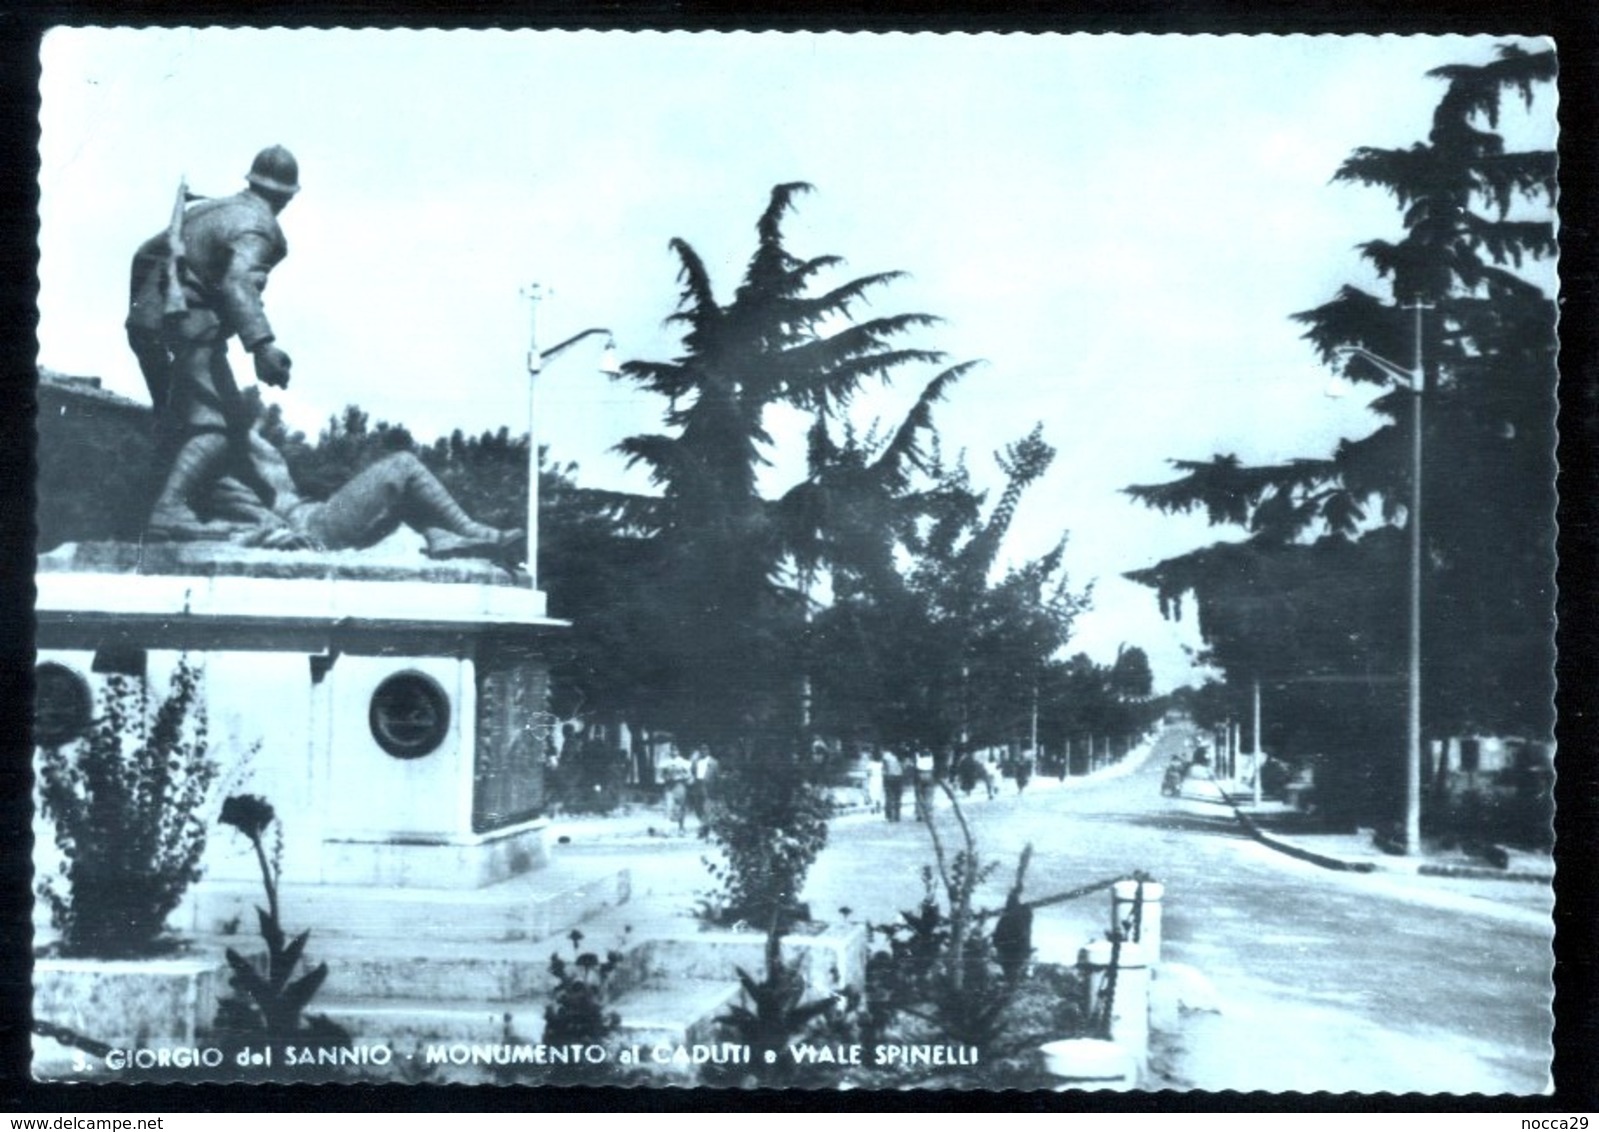 SAN GIORGIO DEL SANNIO - BENEVENTO - 1955 - MONUMENTO AI CADUTI E VIALE SPINELLI - Monumentos A Los Caídos